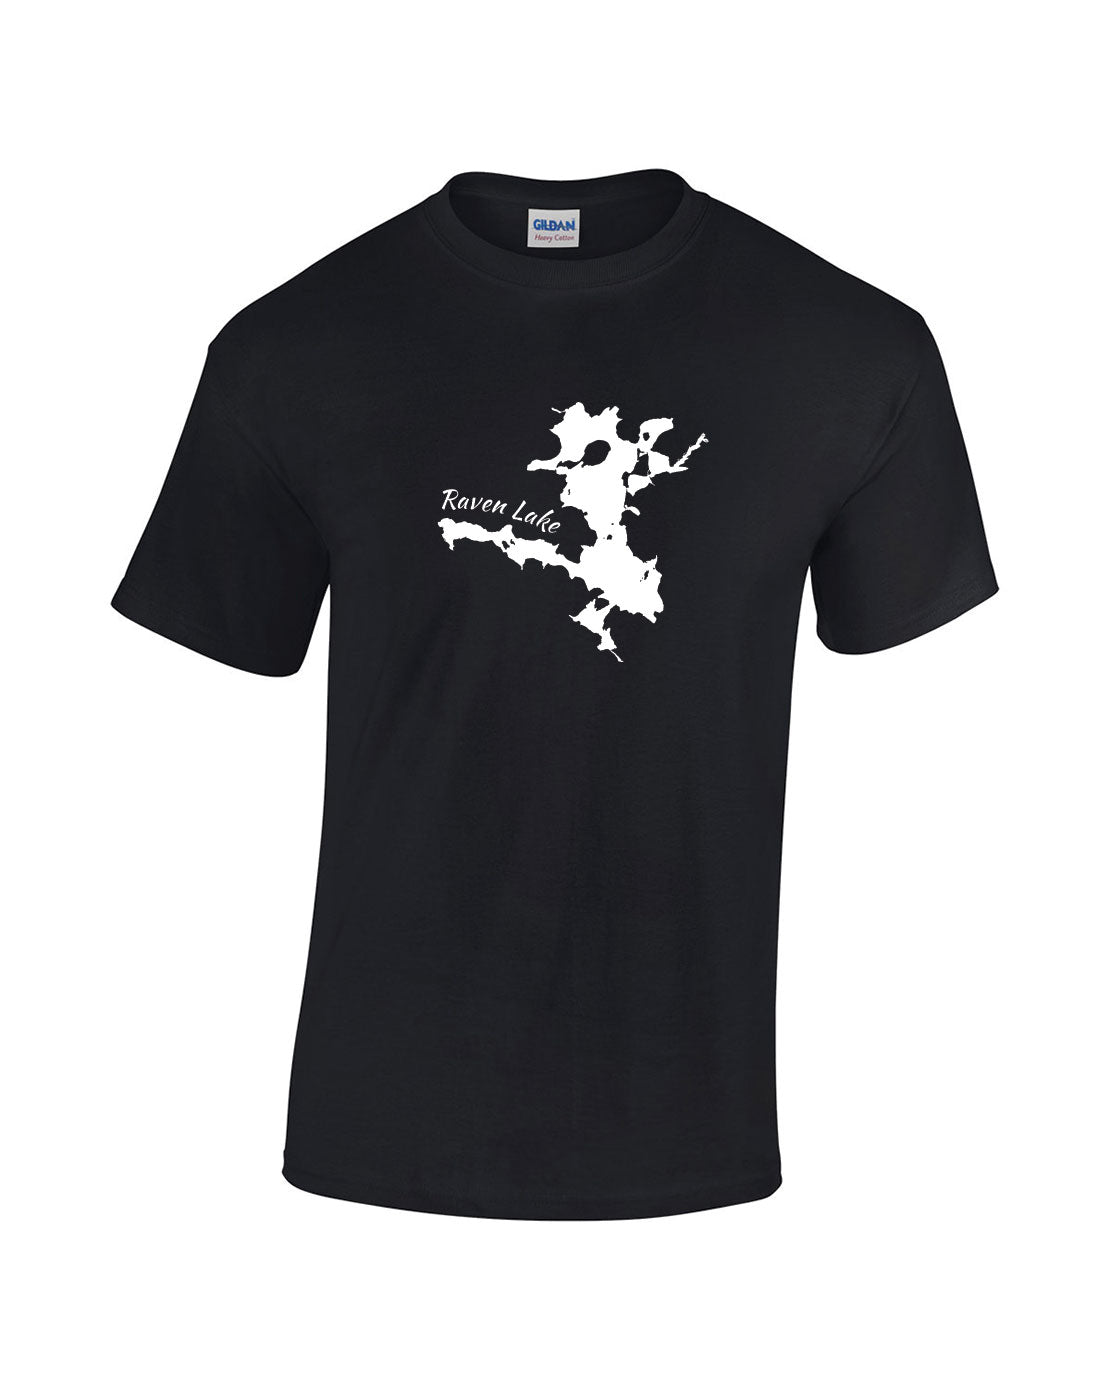 Raven Lake T-Shirt